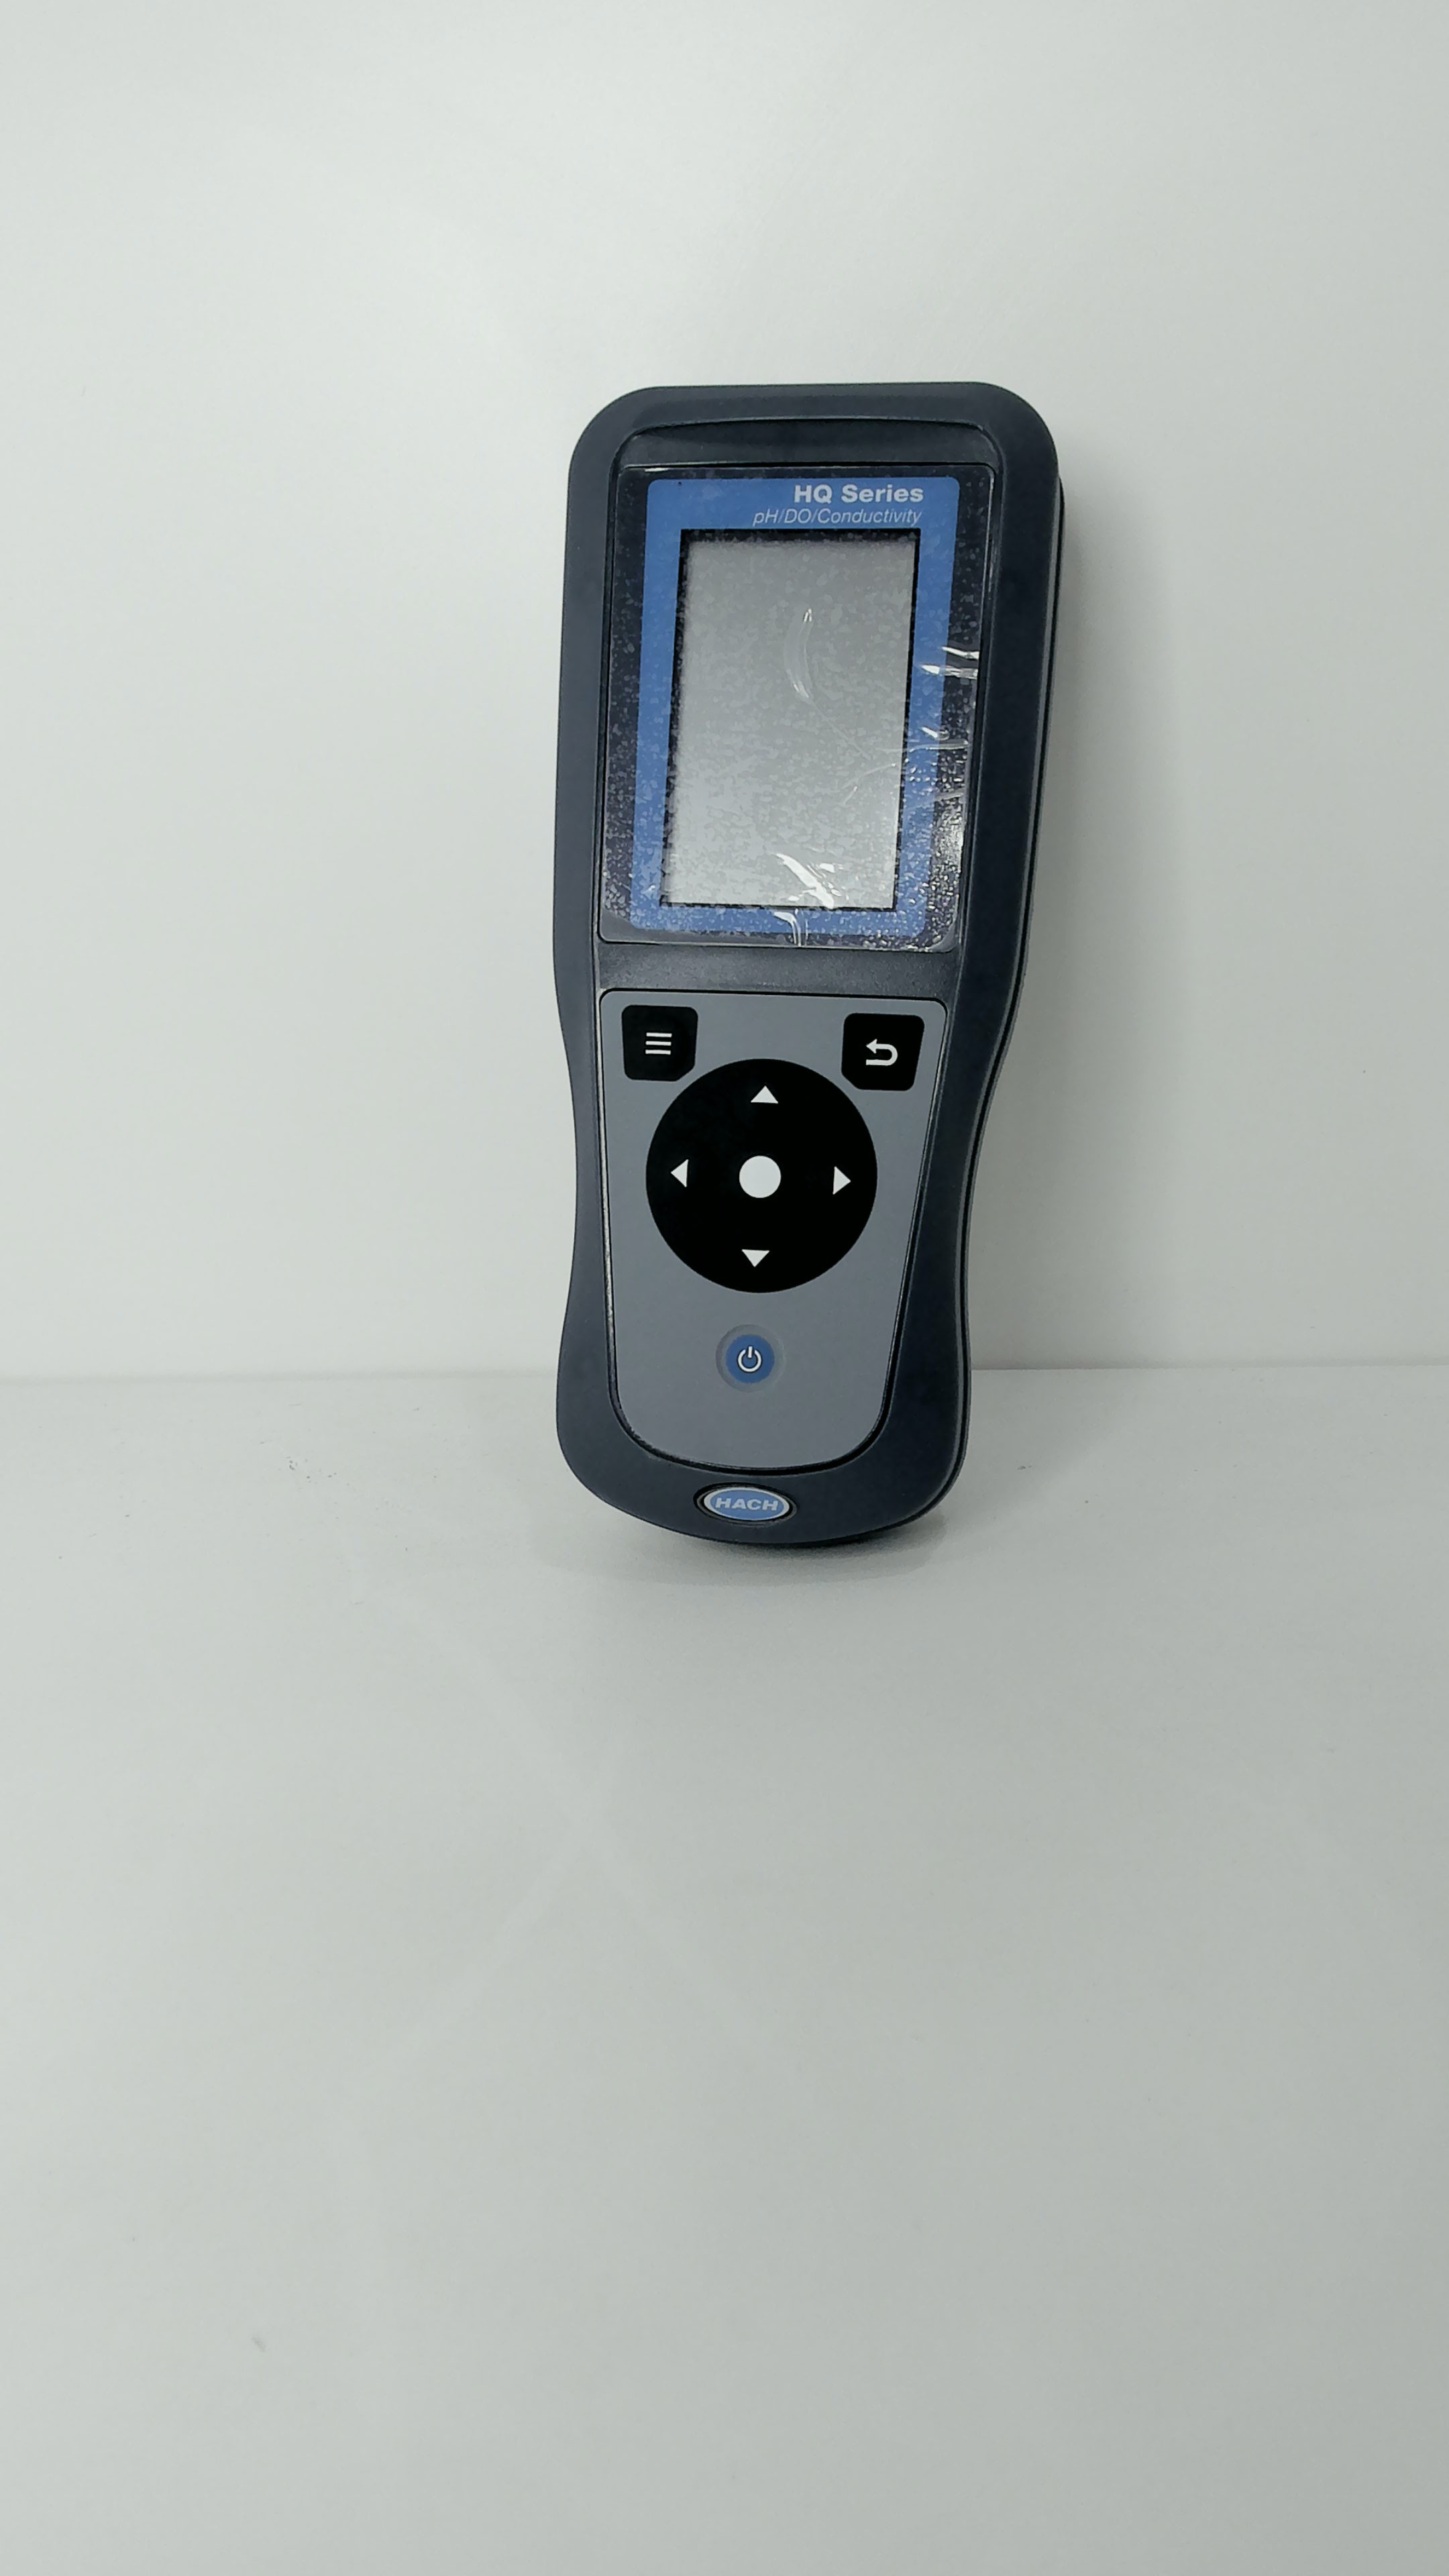 HQHQ2200 Medidor Portátil Multiparámetro, pH, Conductividad, TDS, Salinidad, Oxígeno Disuelto (DO), y ORP(sin electrodos)